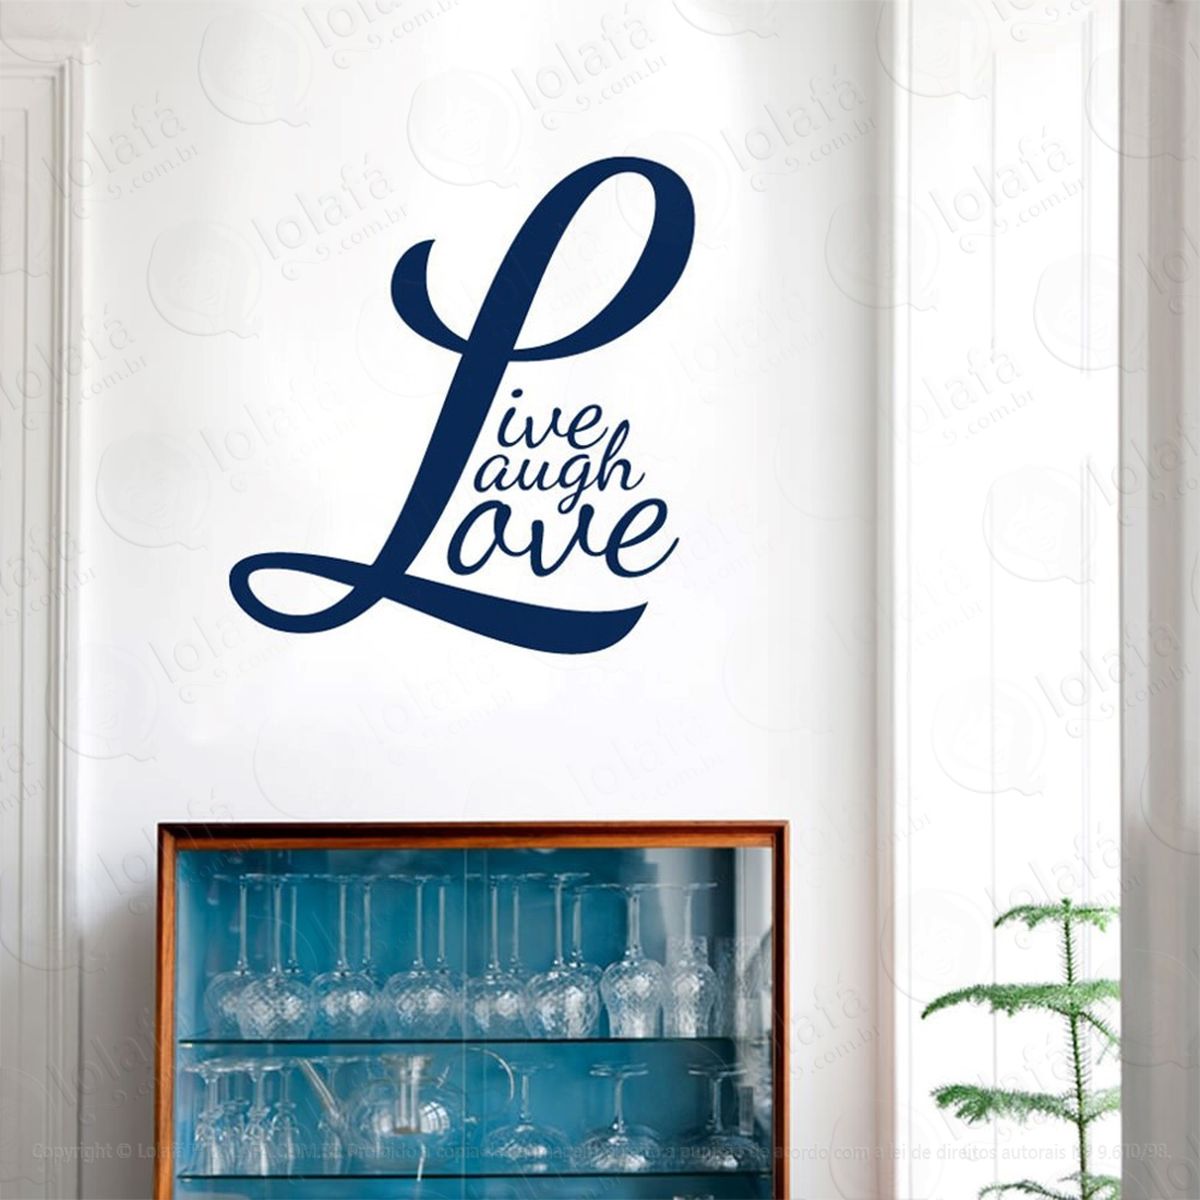 live, laugh, love adesivo de parede frase personalizada para sala, quarto, porta e vidro - mod:70